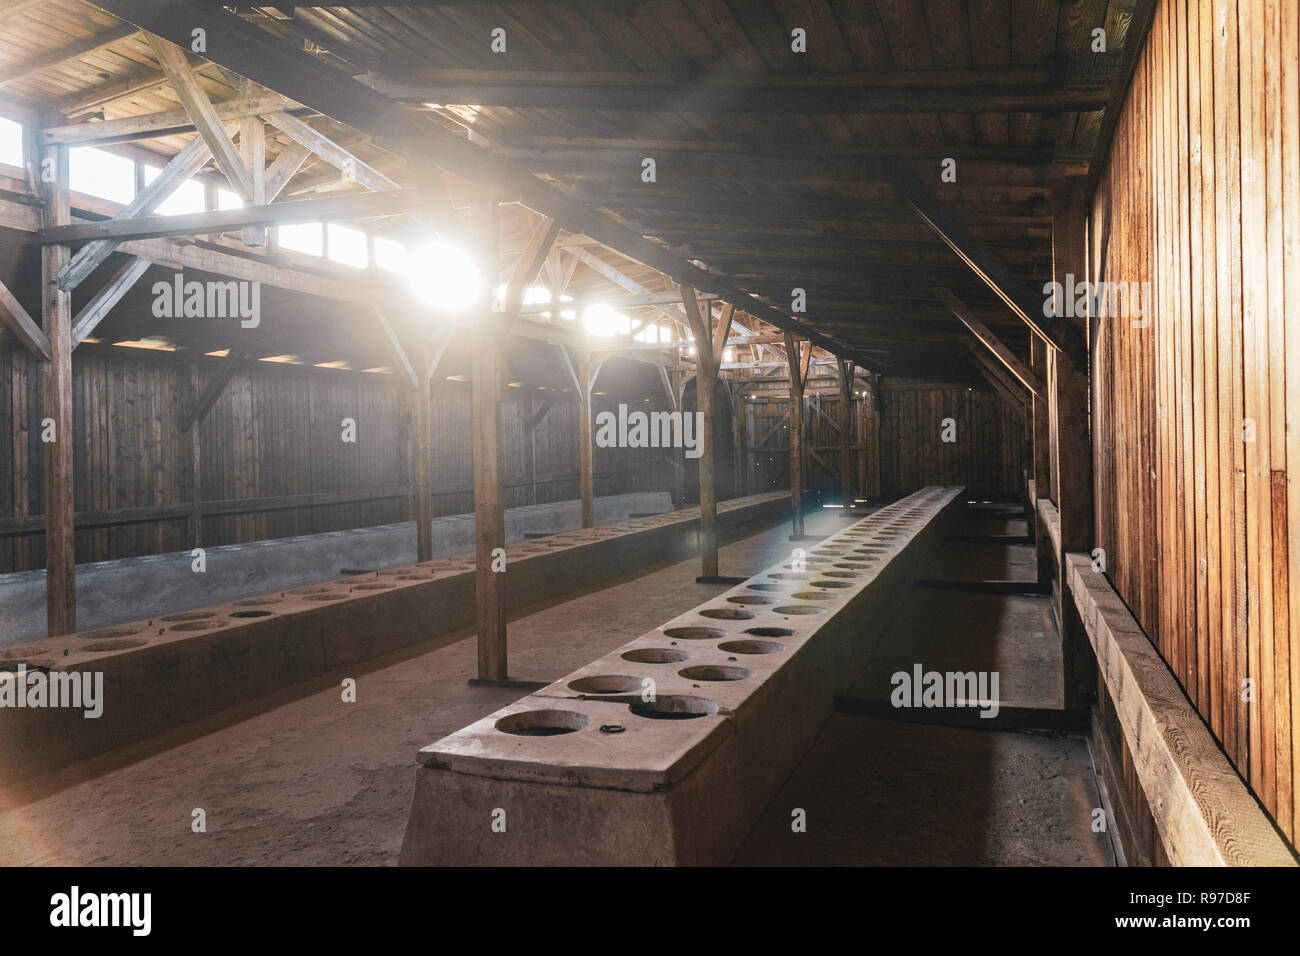 L'intérieur du baraquement à Auschwitz Birkenau Museum anciennement utilisé comme camp de concentration Allemand, Pologne Banque D'Images